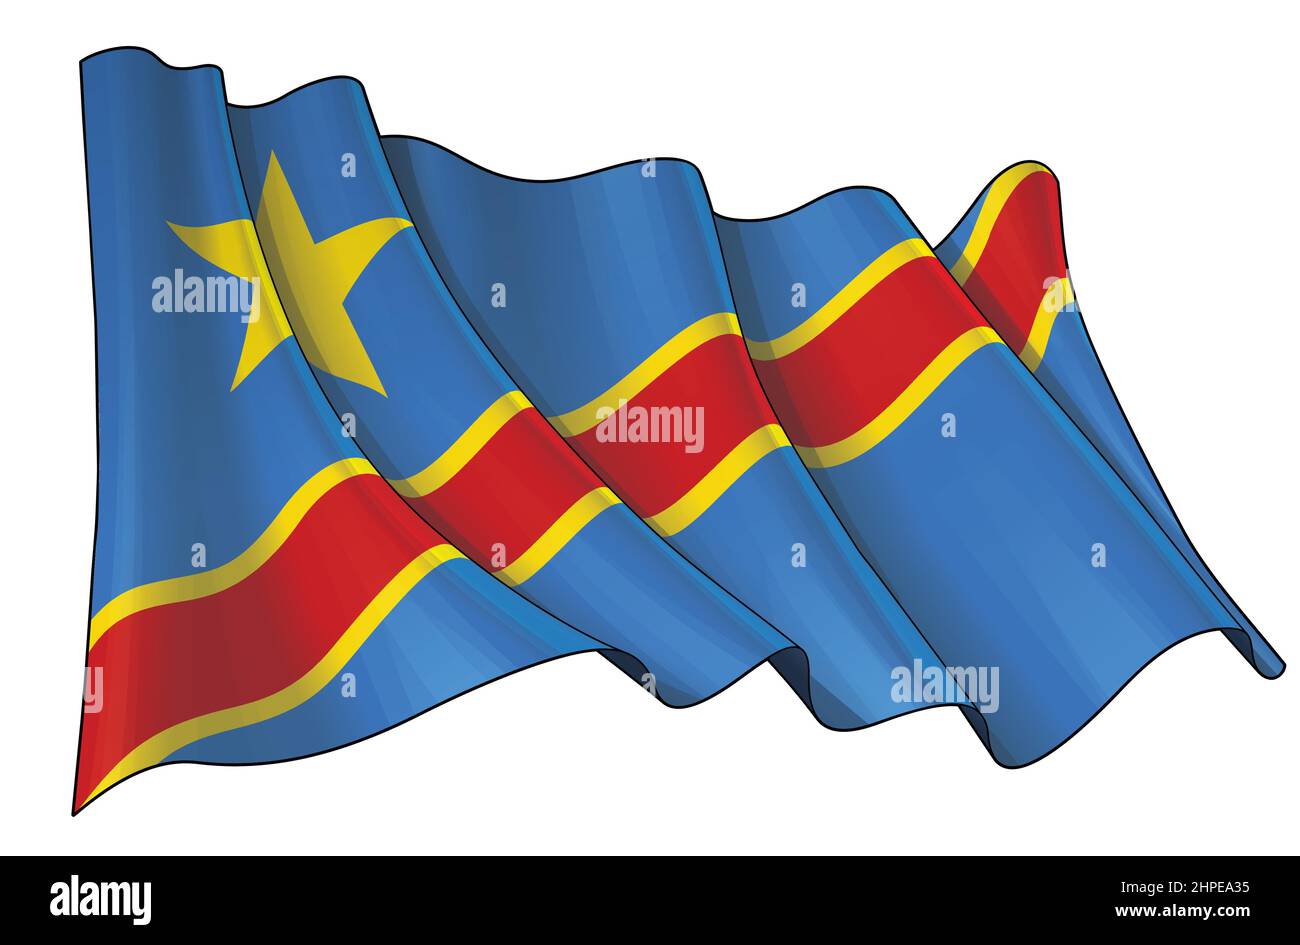 Vektordarstellung einer winkenden Flagge der Demokratischen Republik Kongo. Alle Elemente übersichtlich auf klar definierten Ebenen und Gruppen. Stock Vektor